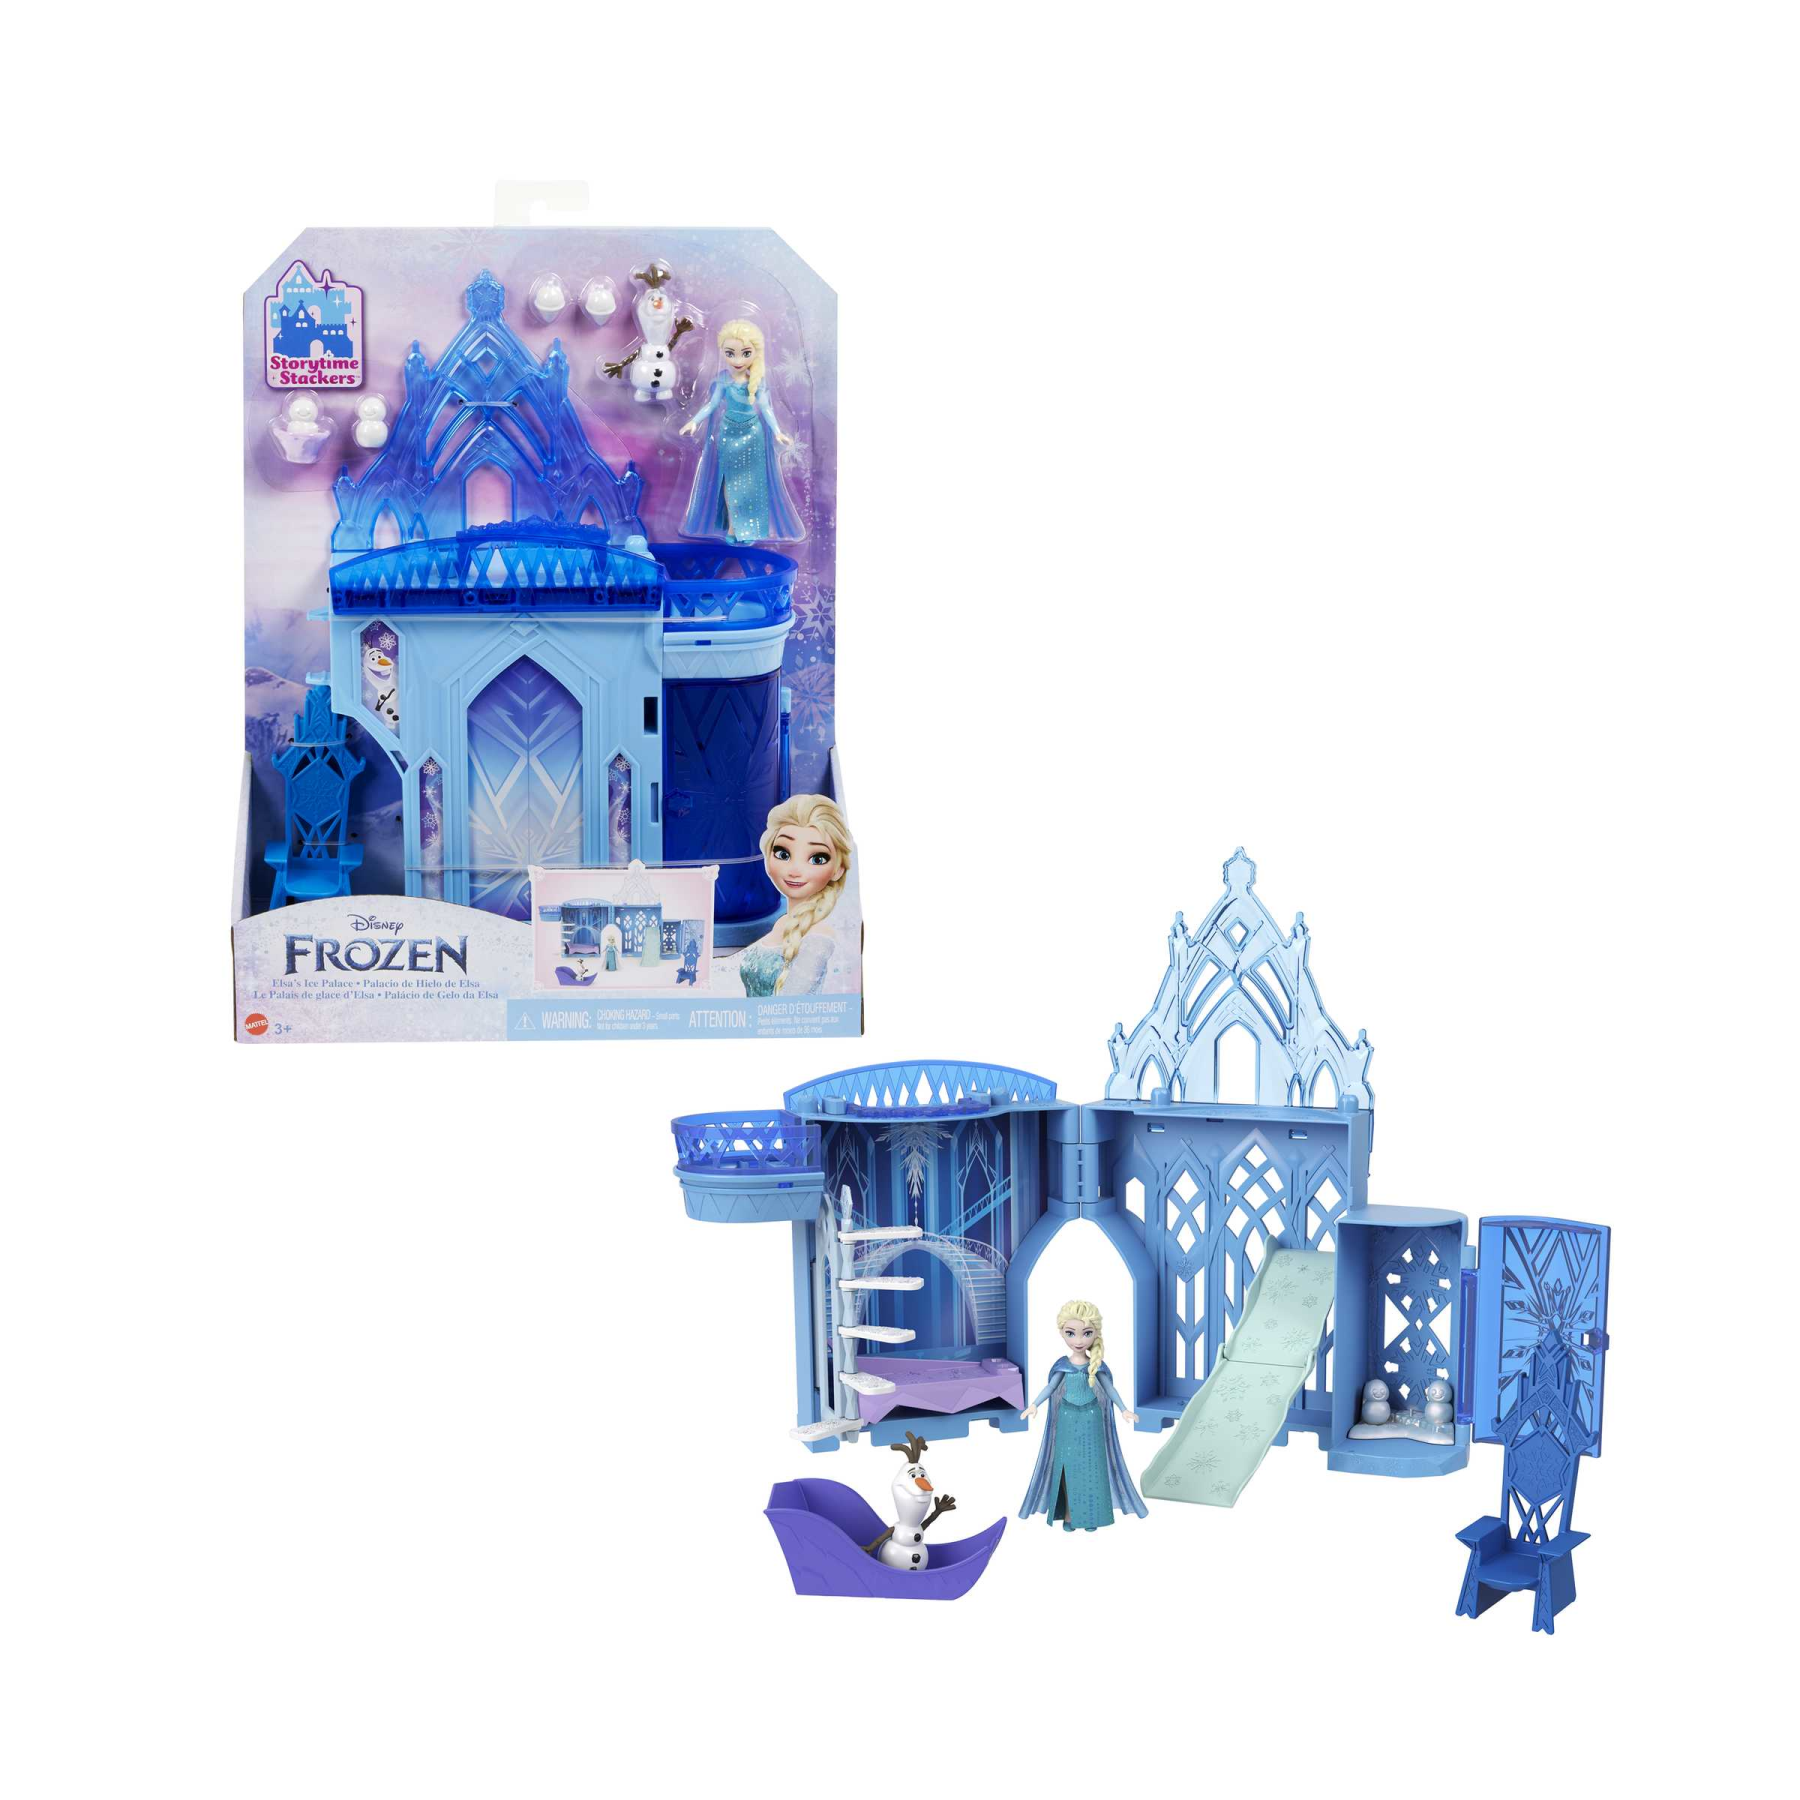 Disney frozen - set componibili palazzo di ghiaccio di elsa, playset castello delle bambole impilabile, con mini bambola elsa, olaf e tanti accessori, giocattolo per bambini, 3+ anni, hlx01 - DISNEY PRINCESS, Frozen